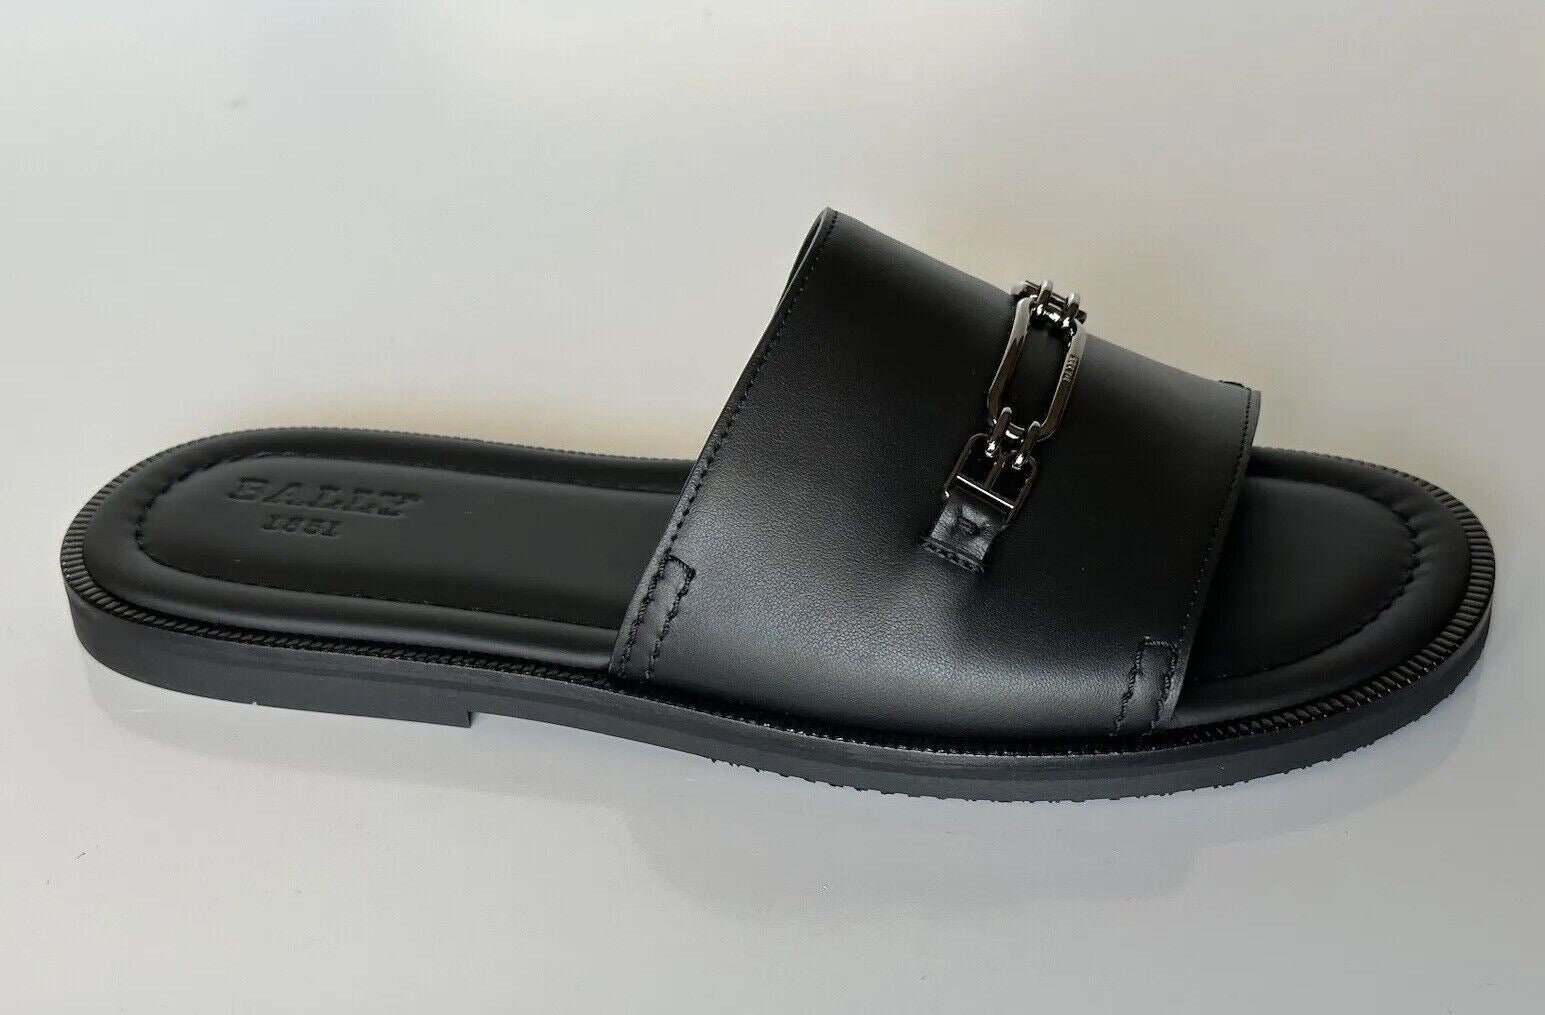 NIB Bally Herren Jacob Leather Black Slides Sandalen 10 US (43 Euro) 6300469 Italien 